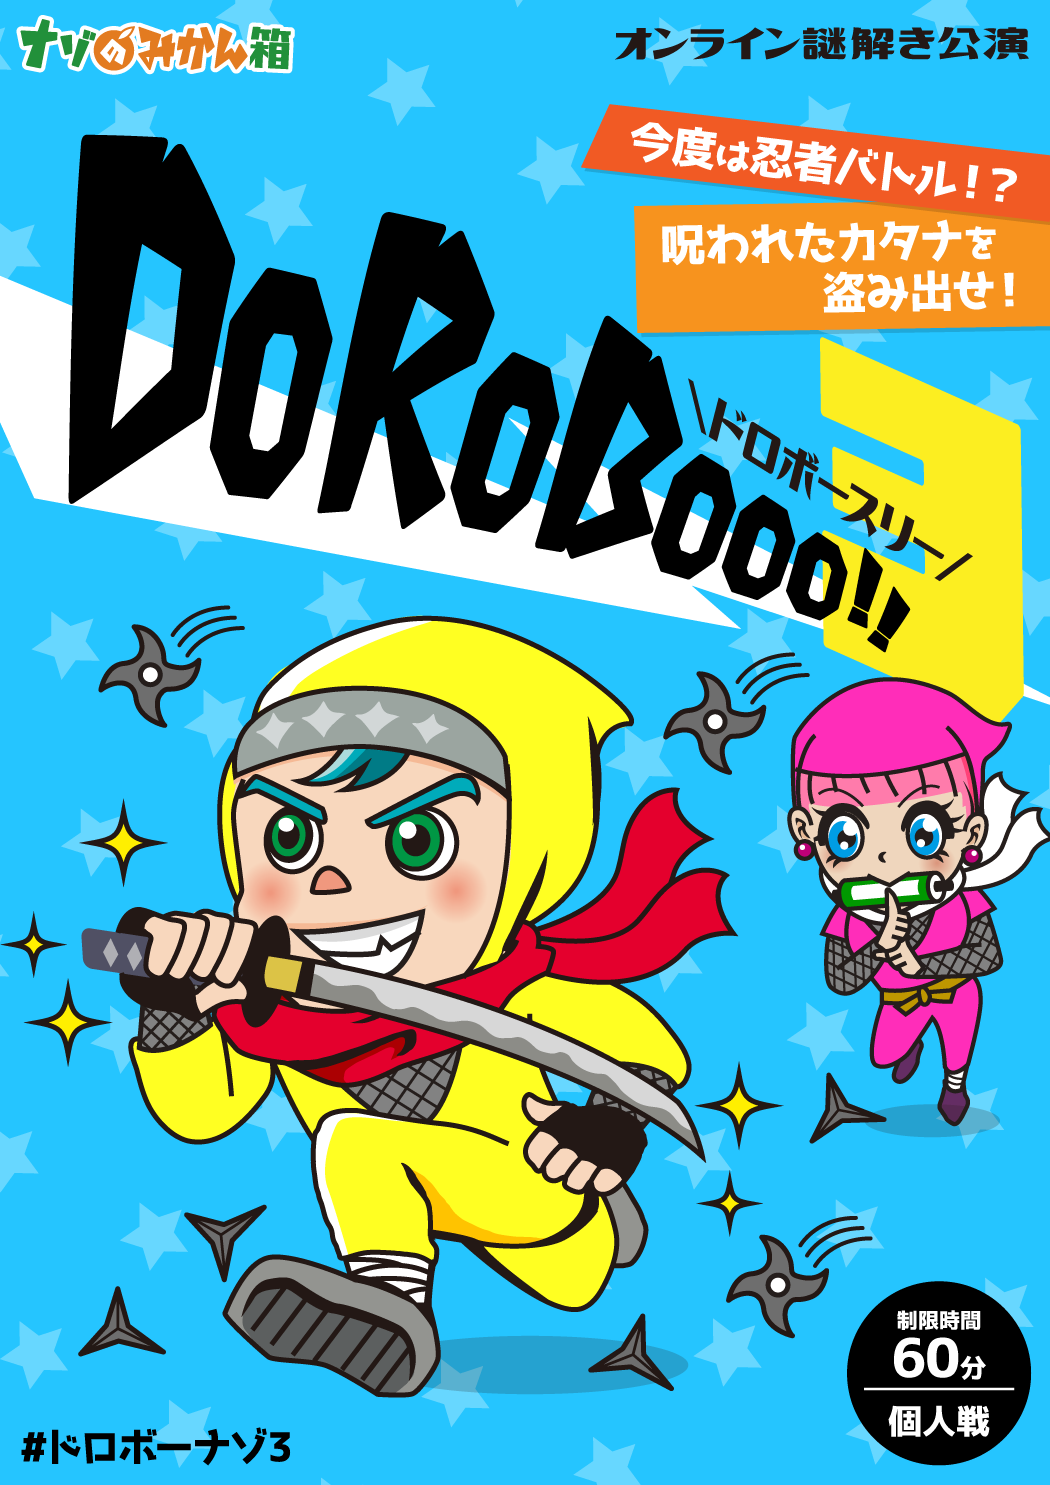 ナゾのみかん箱 ✕ テクニコテクニカ『DoRoBooo!!3』体験型オンライン謎解きゲーム